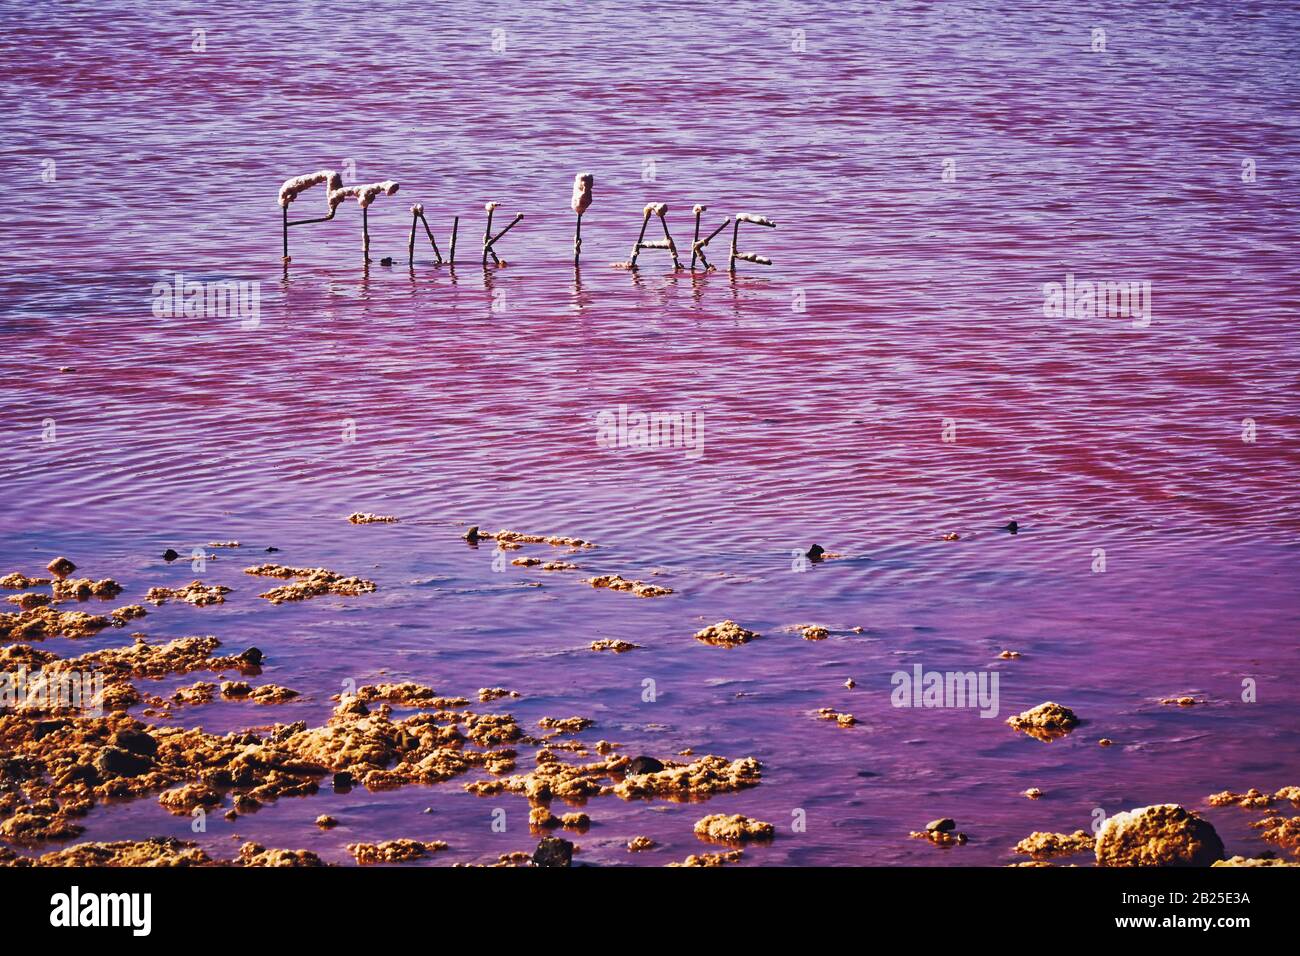 Rosafarbene Salzseen im Westen australiens in der Nähe von Port Gregory die Seen wechseln durch das Spektrum von Rot zu Bubble-gum pink zu lilafarben lila es wird von füttert Stockfoto